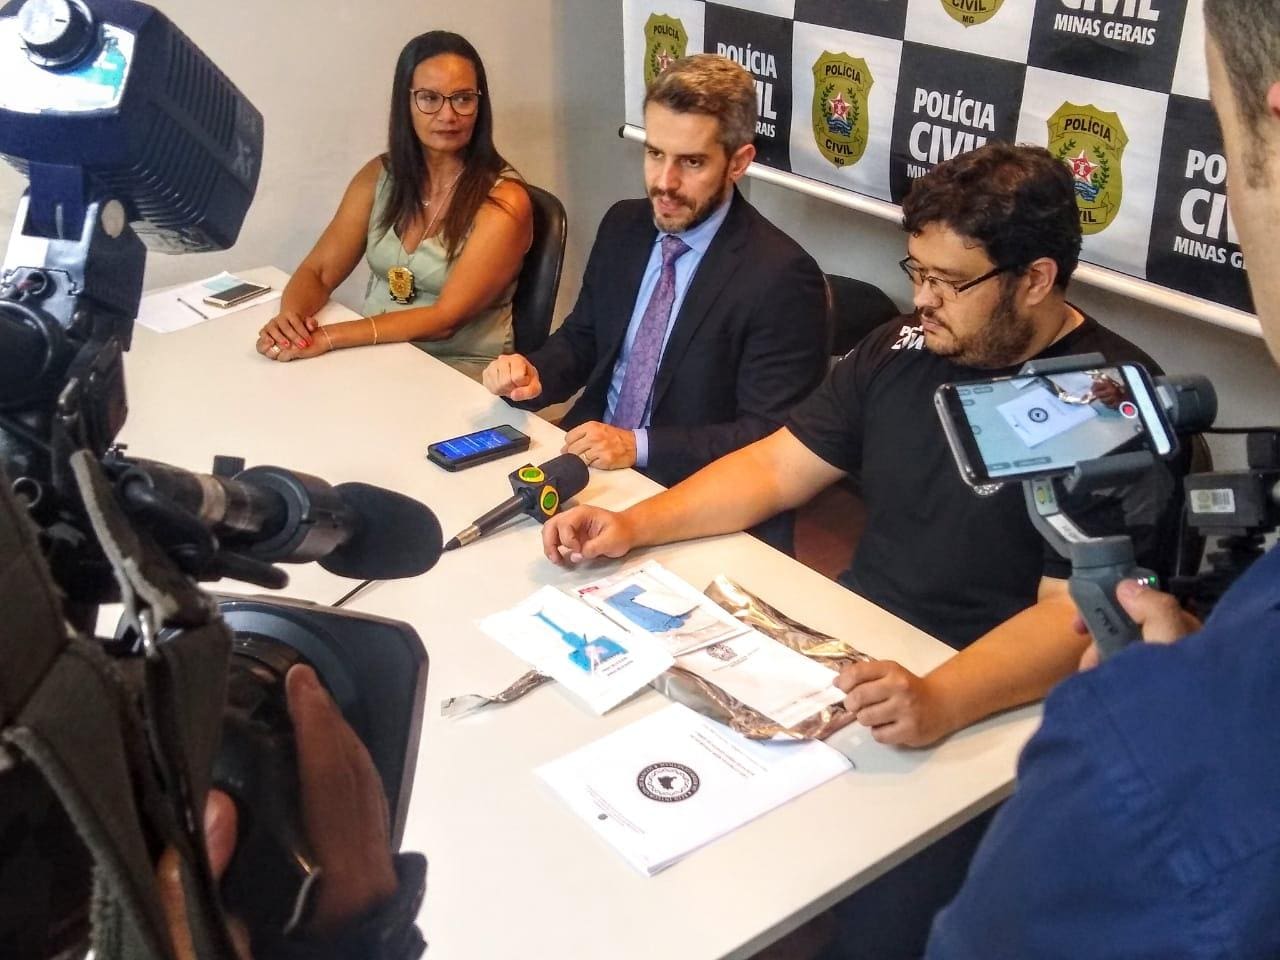 Polícia Civil de Minas Gerais pretende ampliar banco de dados de perfil genético